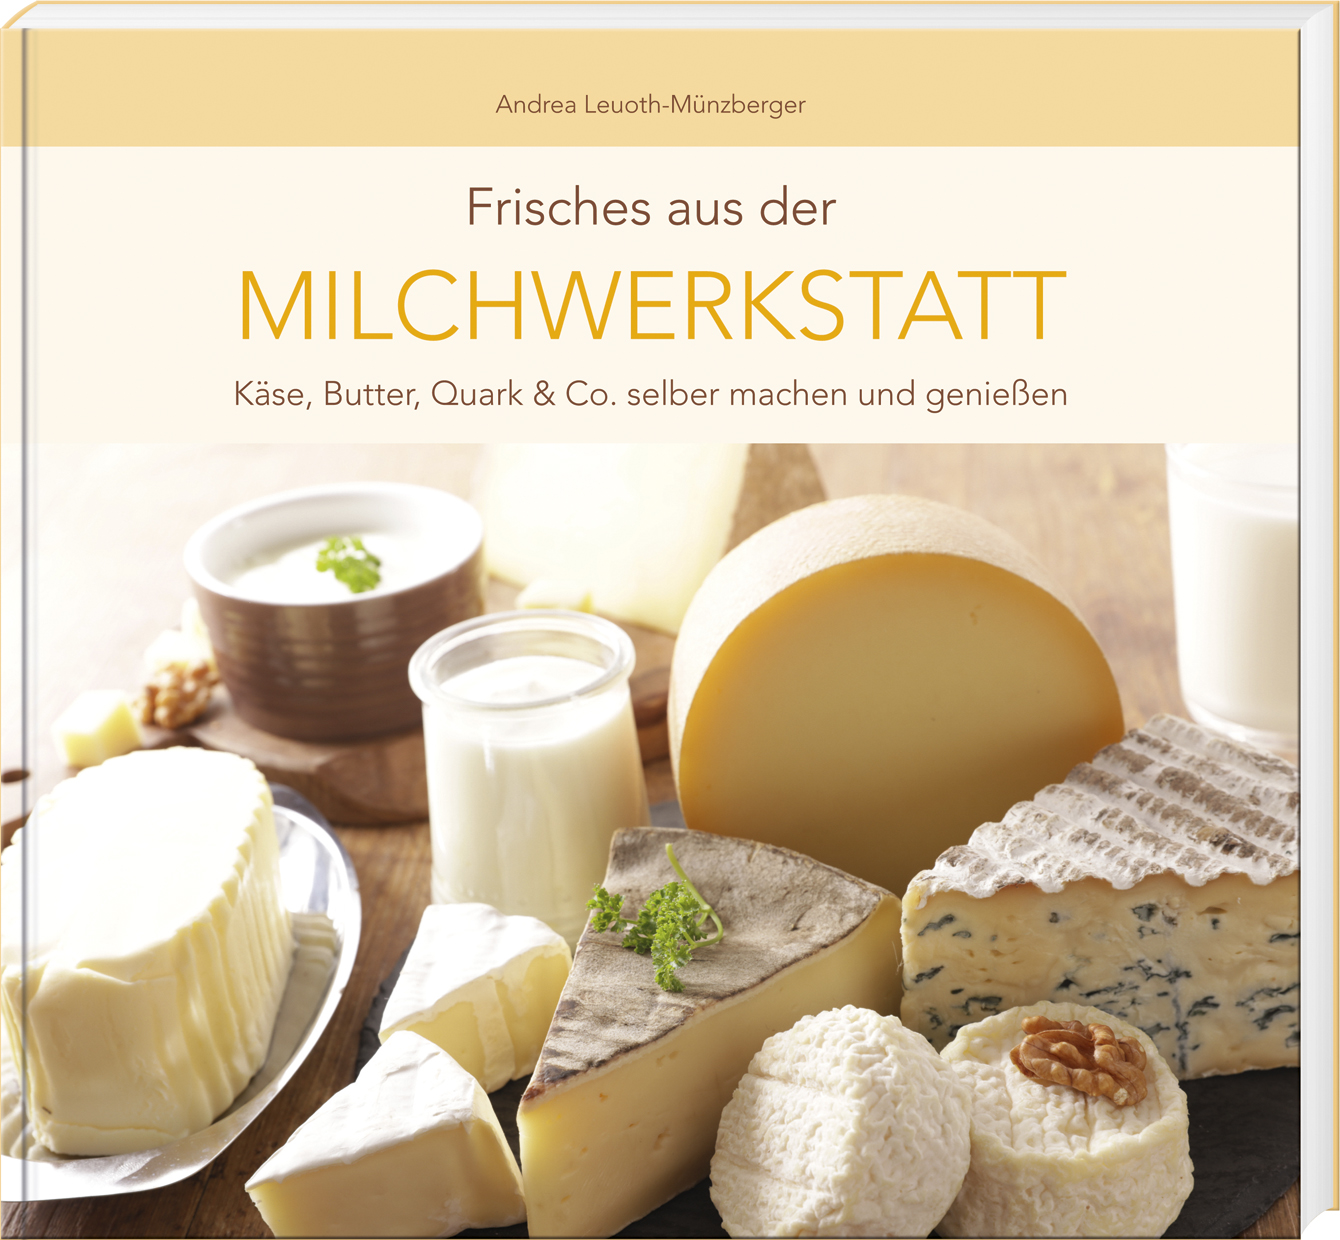 Andrea Leuoth-Münzberger - Frisches aus der Milchwerkstatt